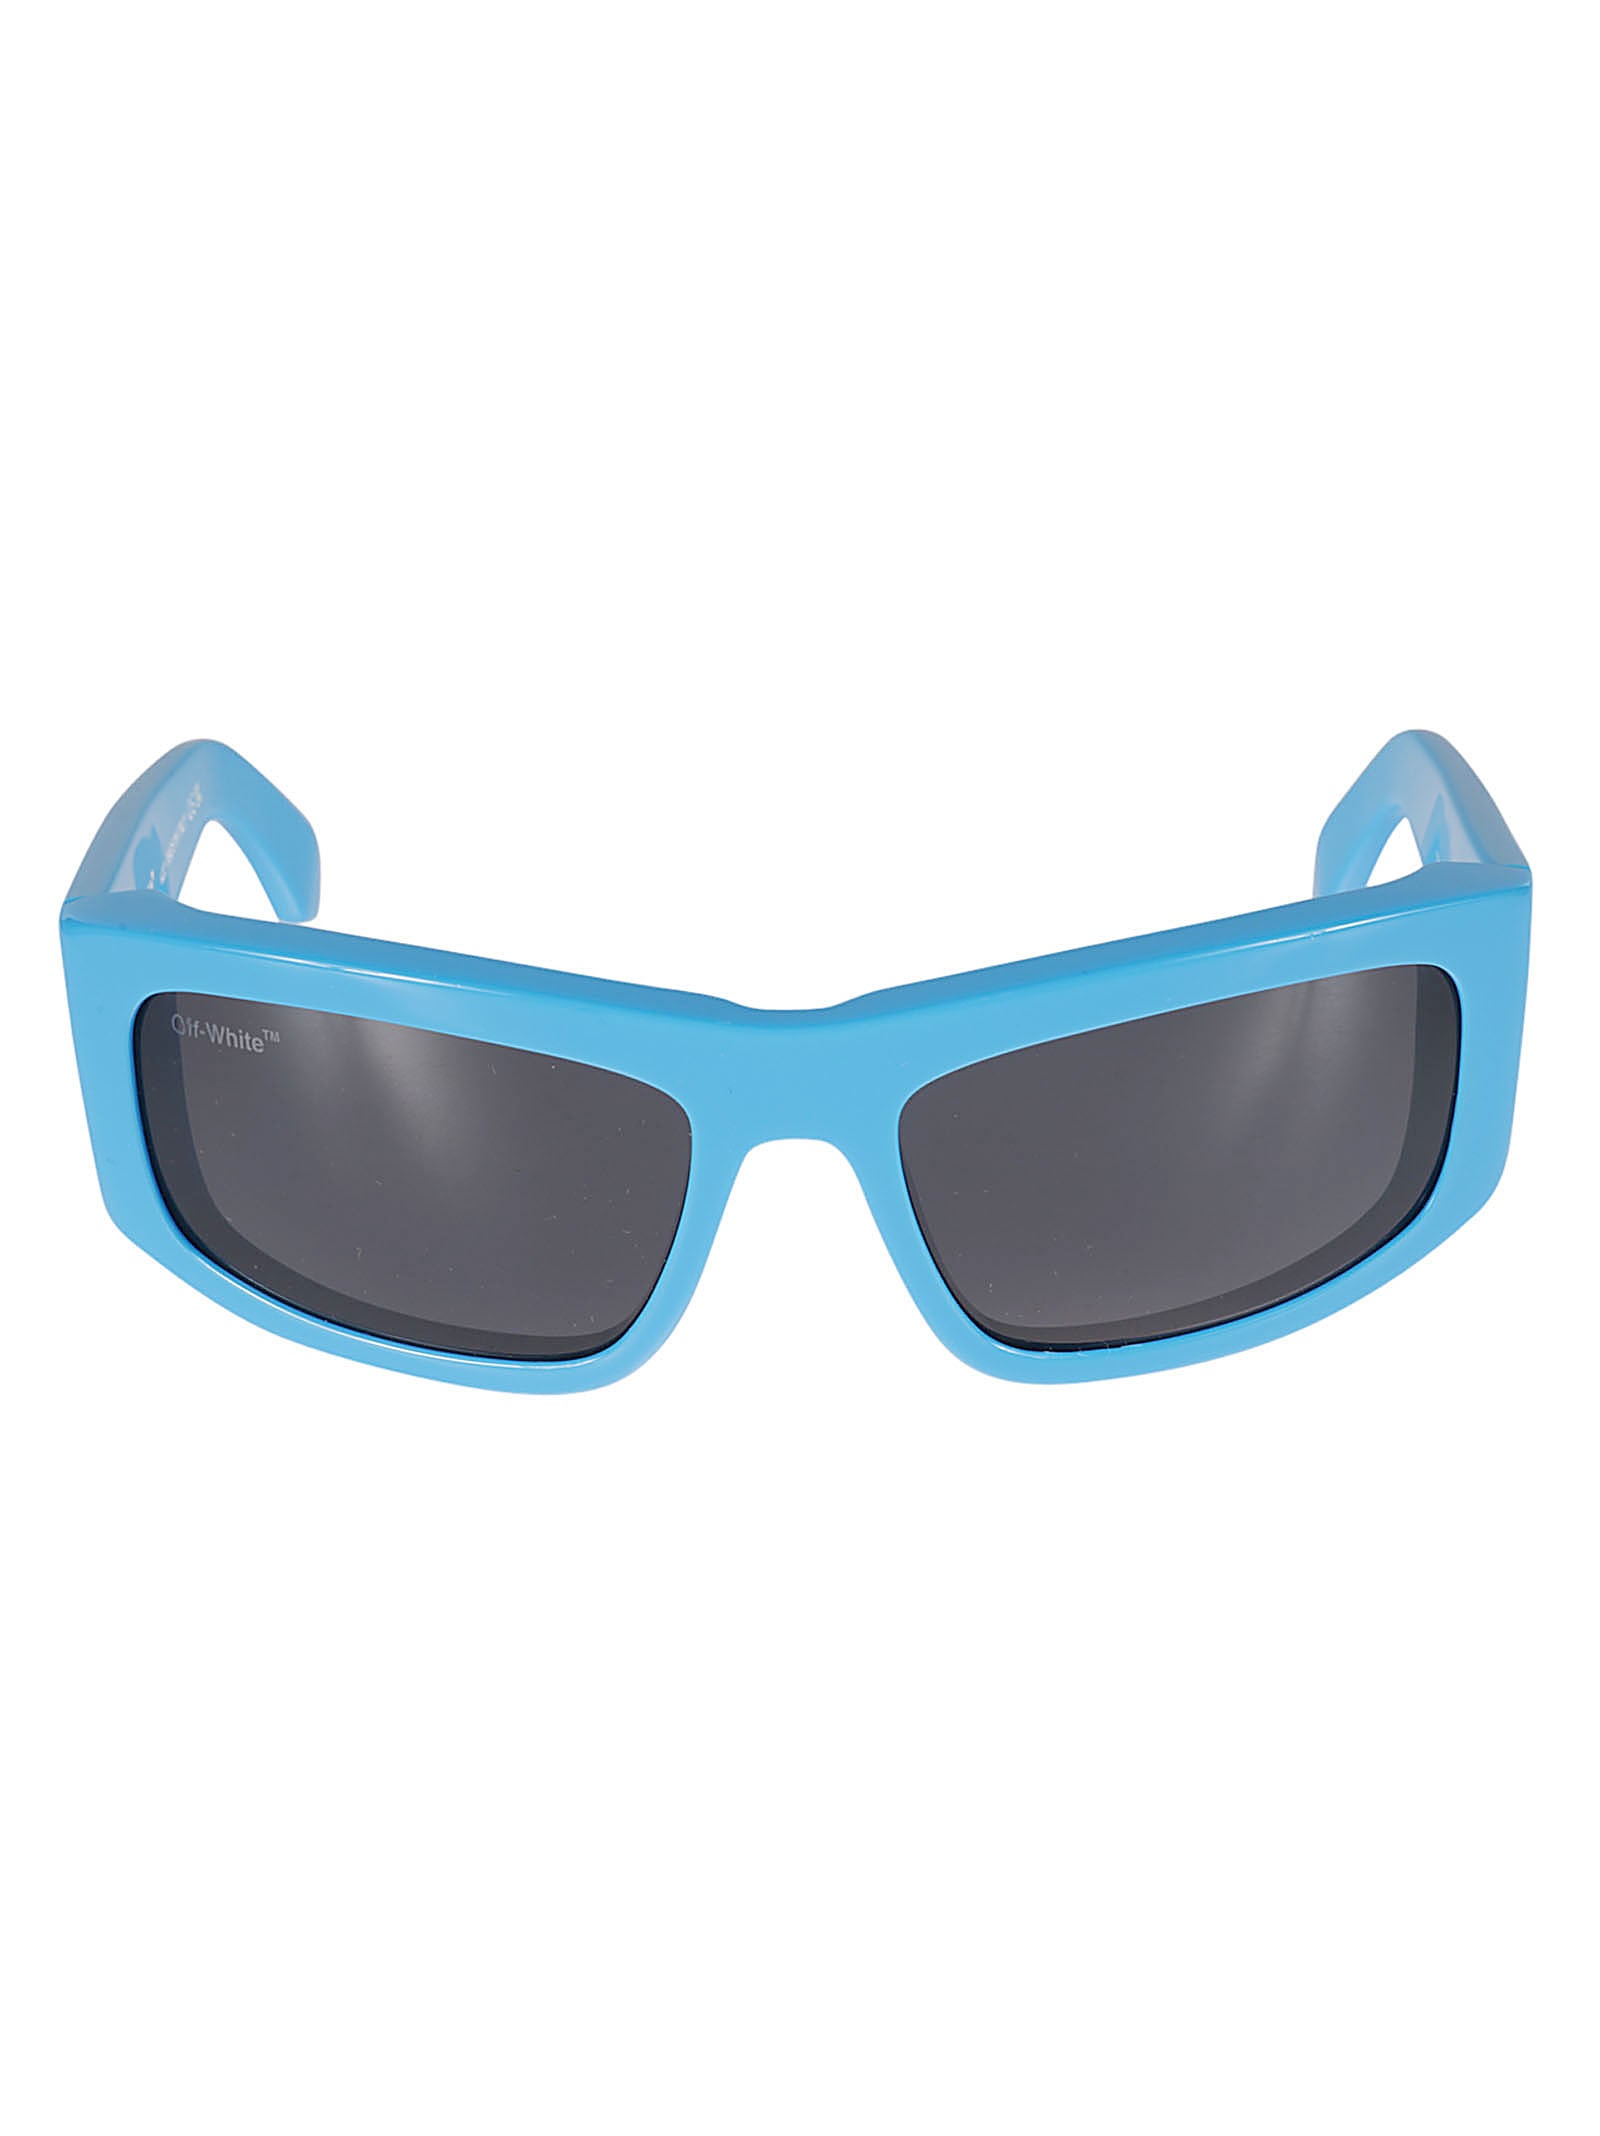 Off-white Joseph Sunglasses In Blue